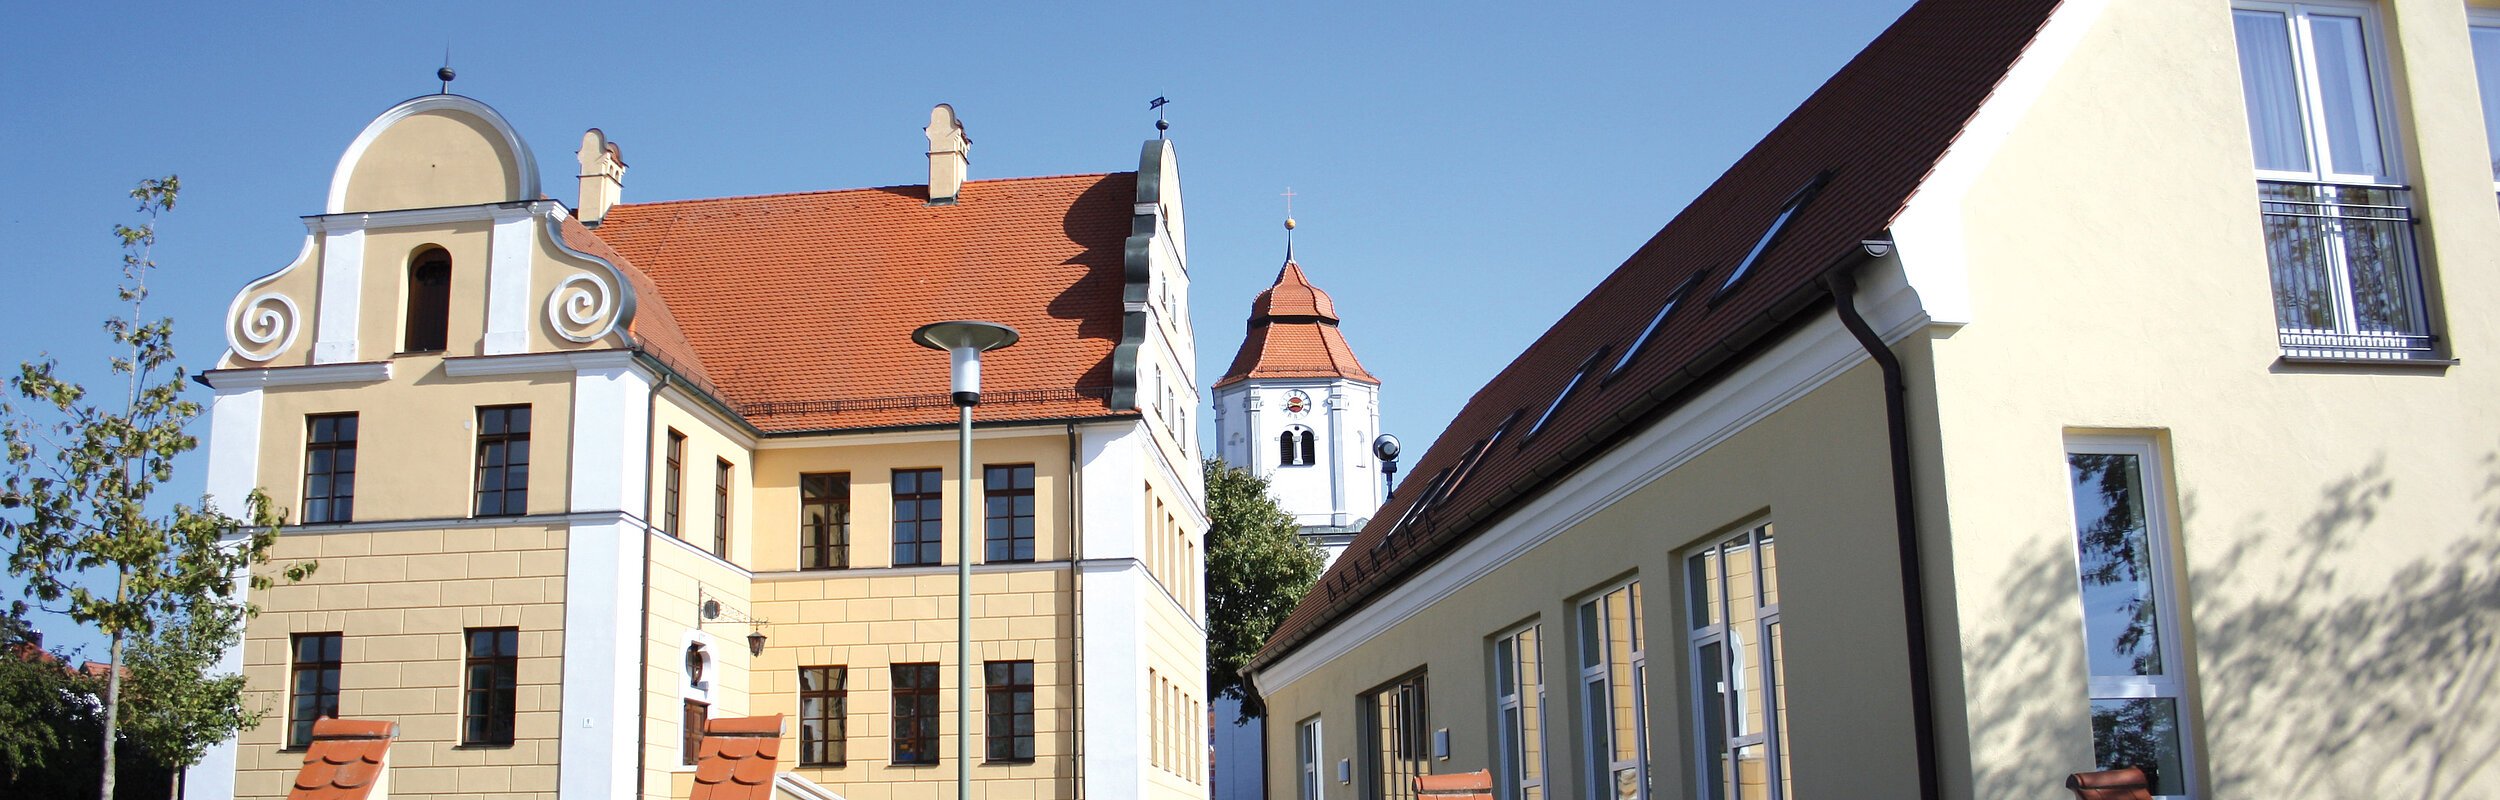 Gemeinde Buchdorf - das alte Schulhaus mit neuem Anbau